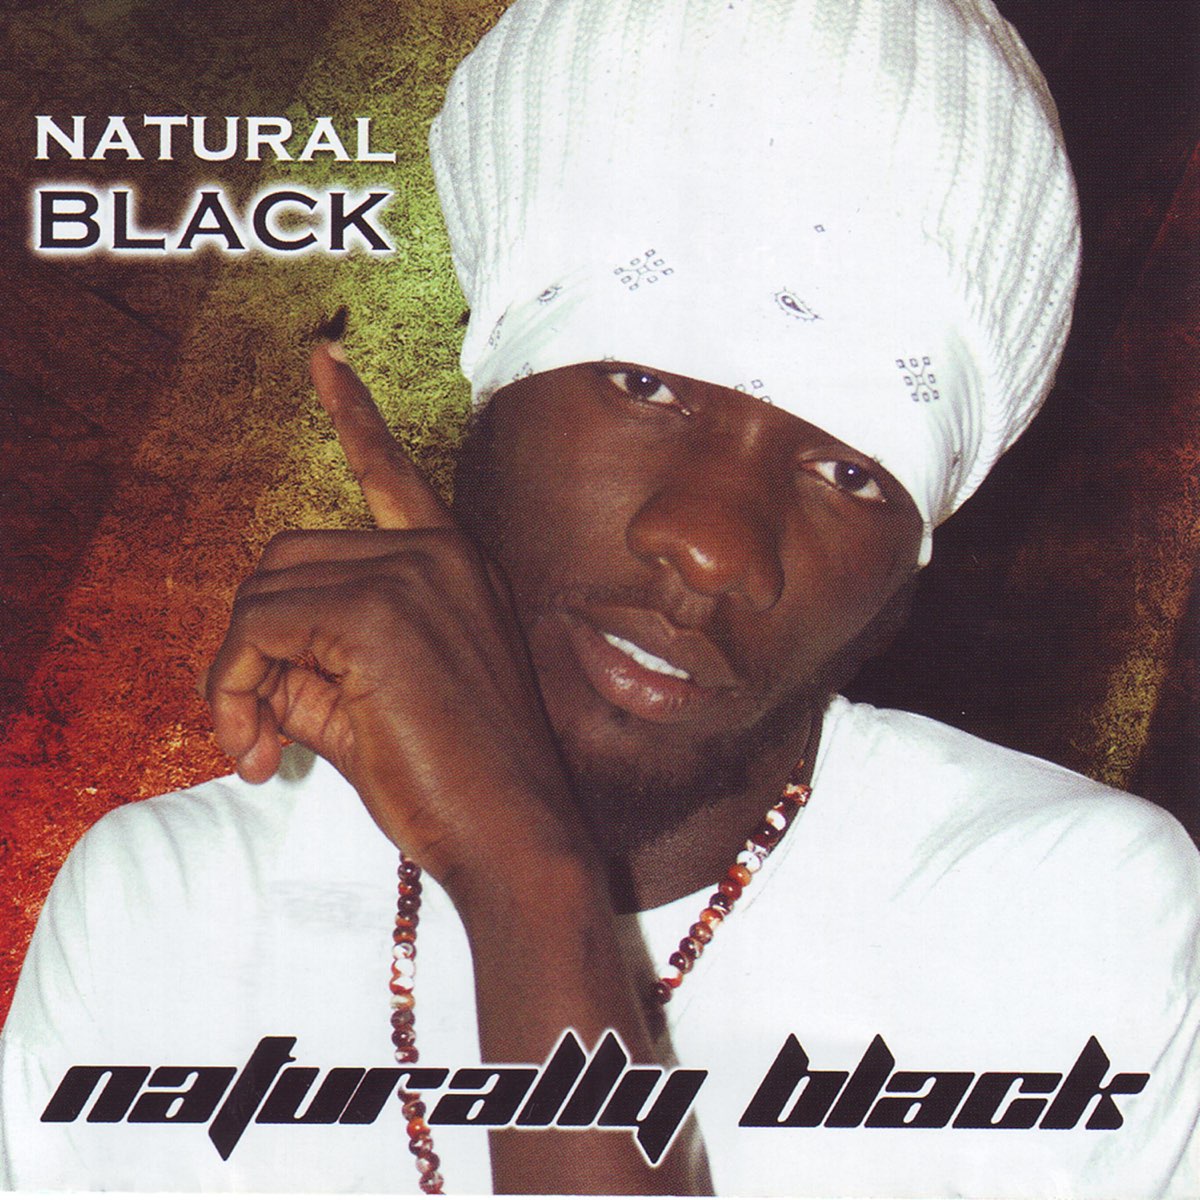 Natural Black. Big black natural